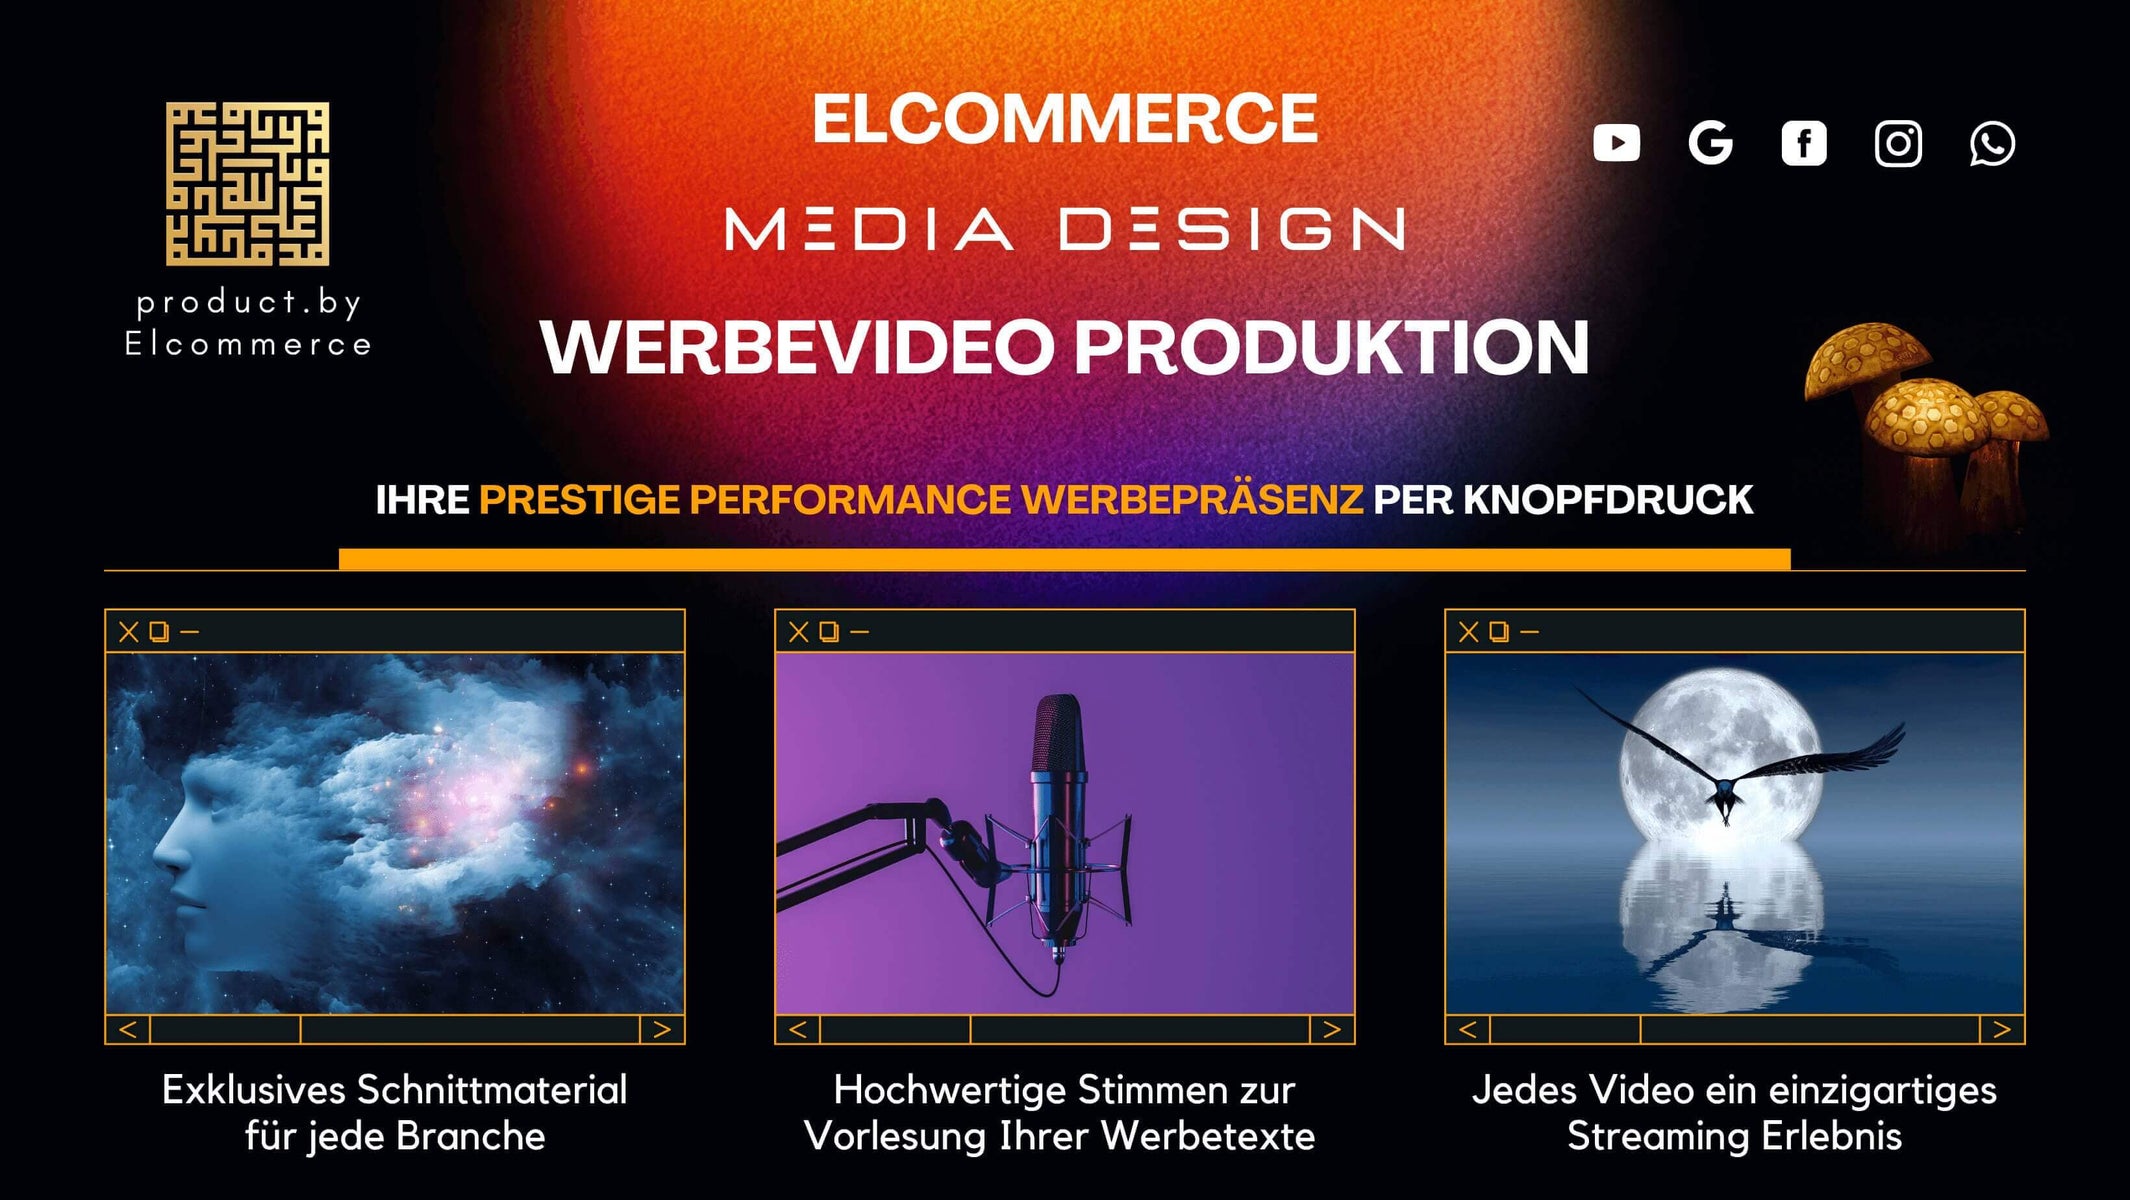 Elcommerce Werbevideo Entwicklung, Prestige Performance Mediengestaltung, Werbevideo Entwicklung in Tv un Cinema Qualität